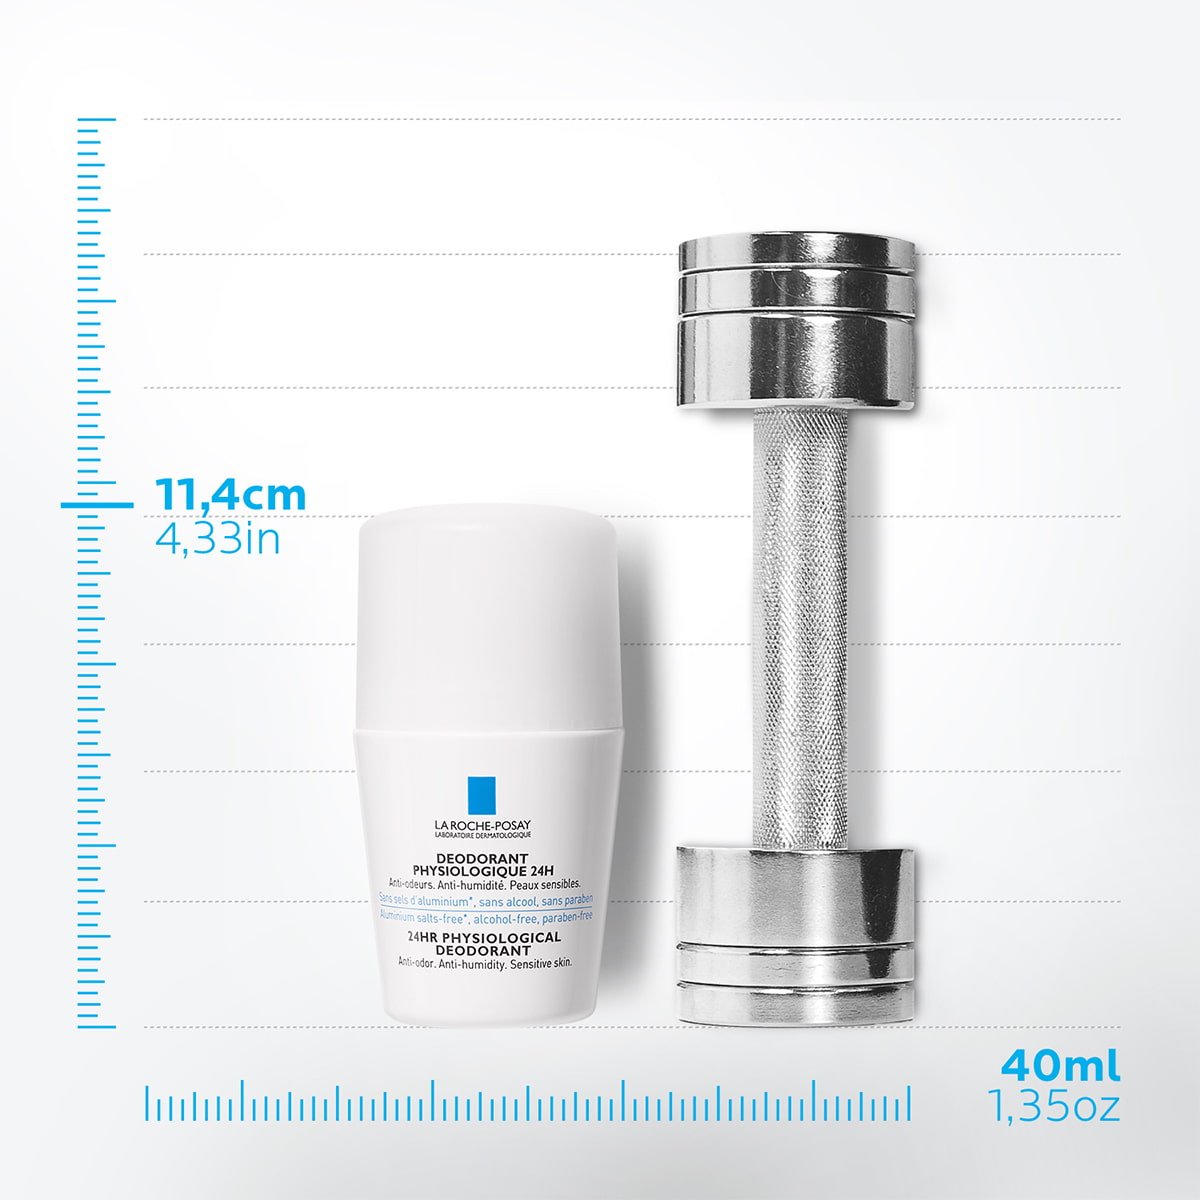 La Roche Posay ProduktSide Deodorant Physiological Roll On 24h 50ml 33